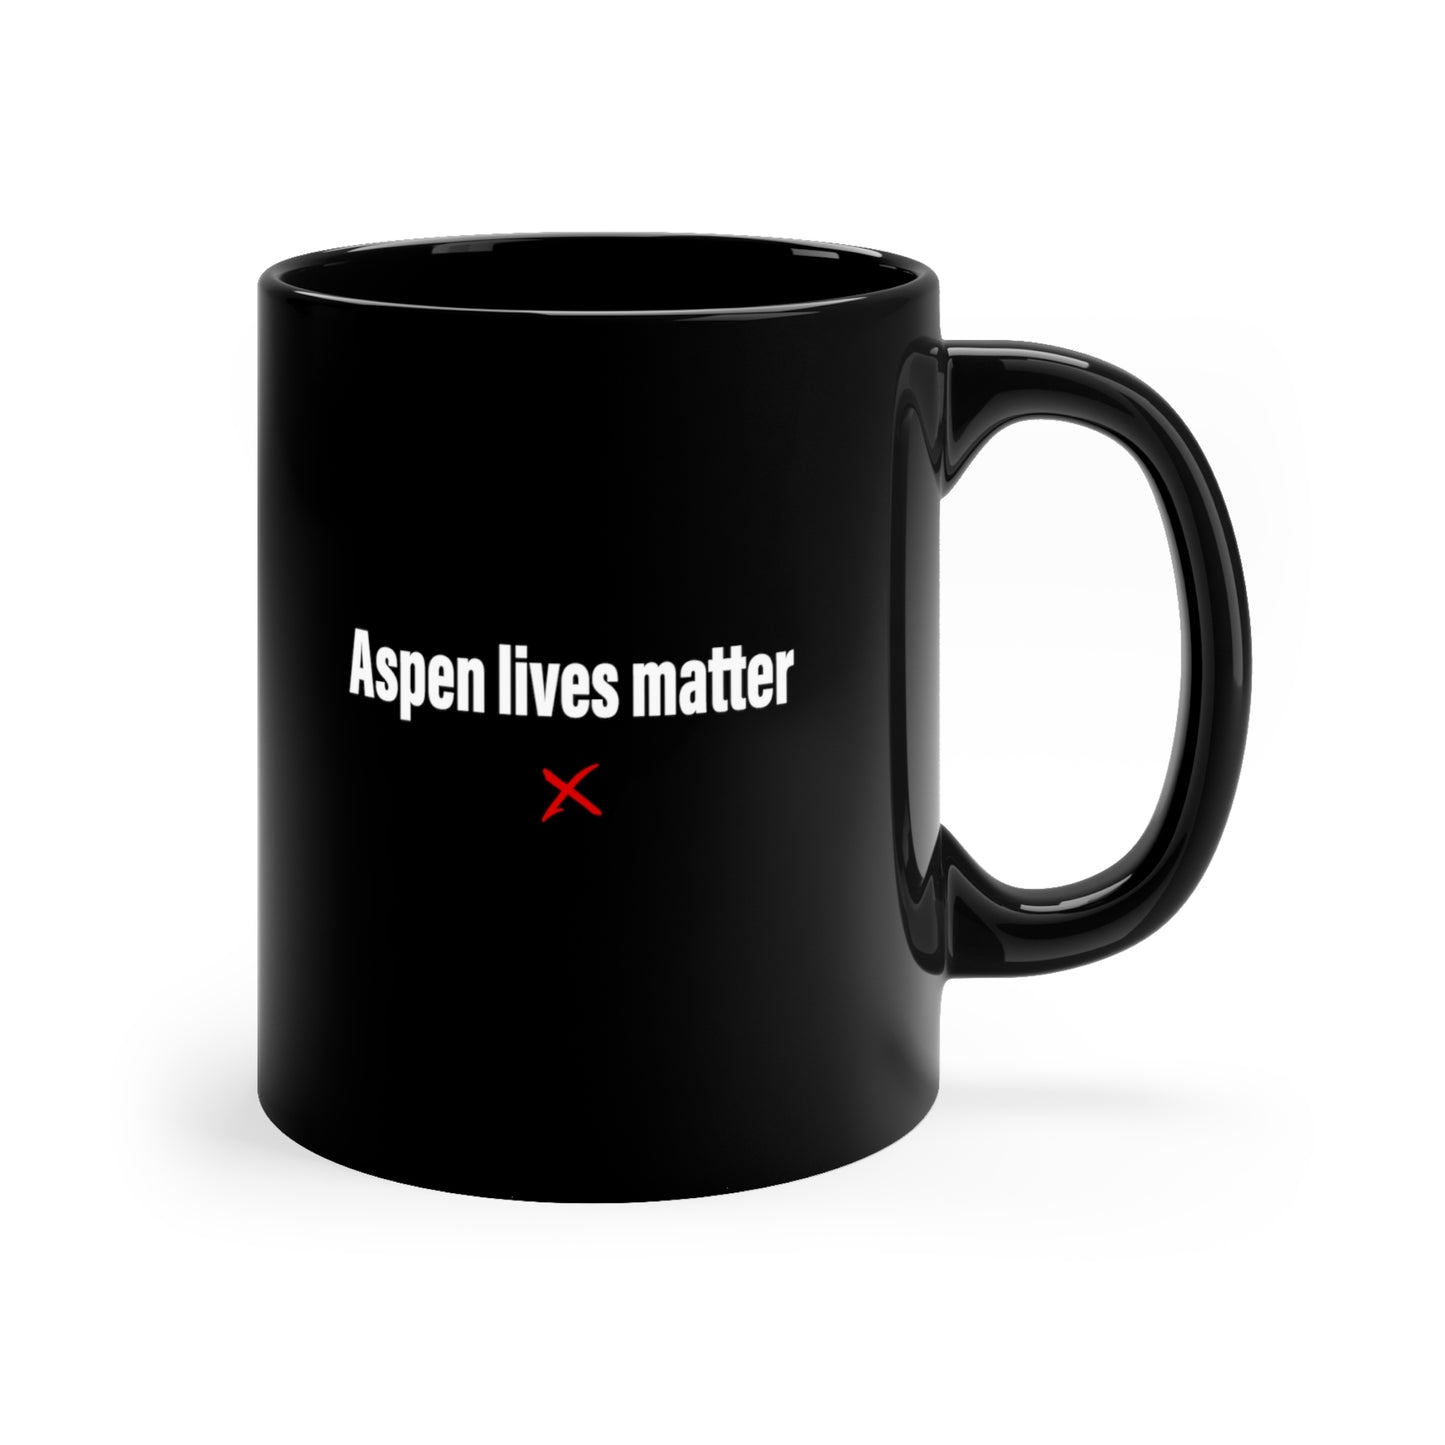 Aspen lives matter - Mug